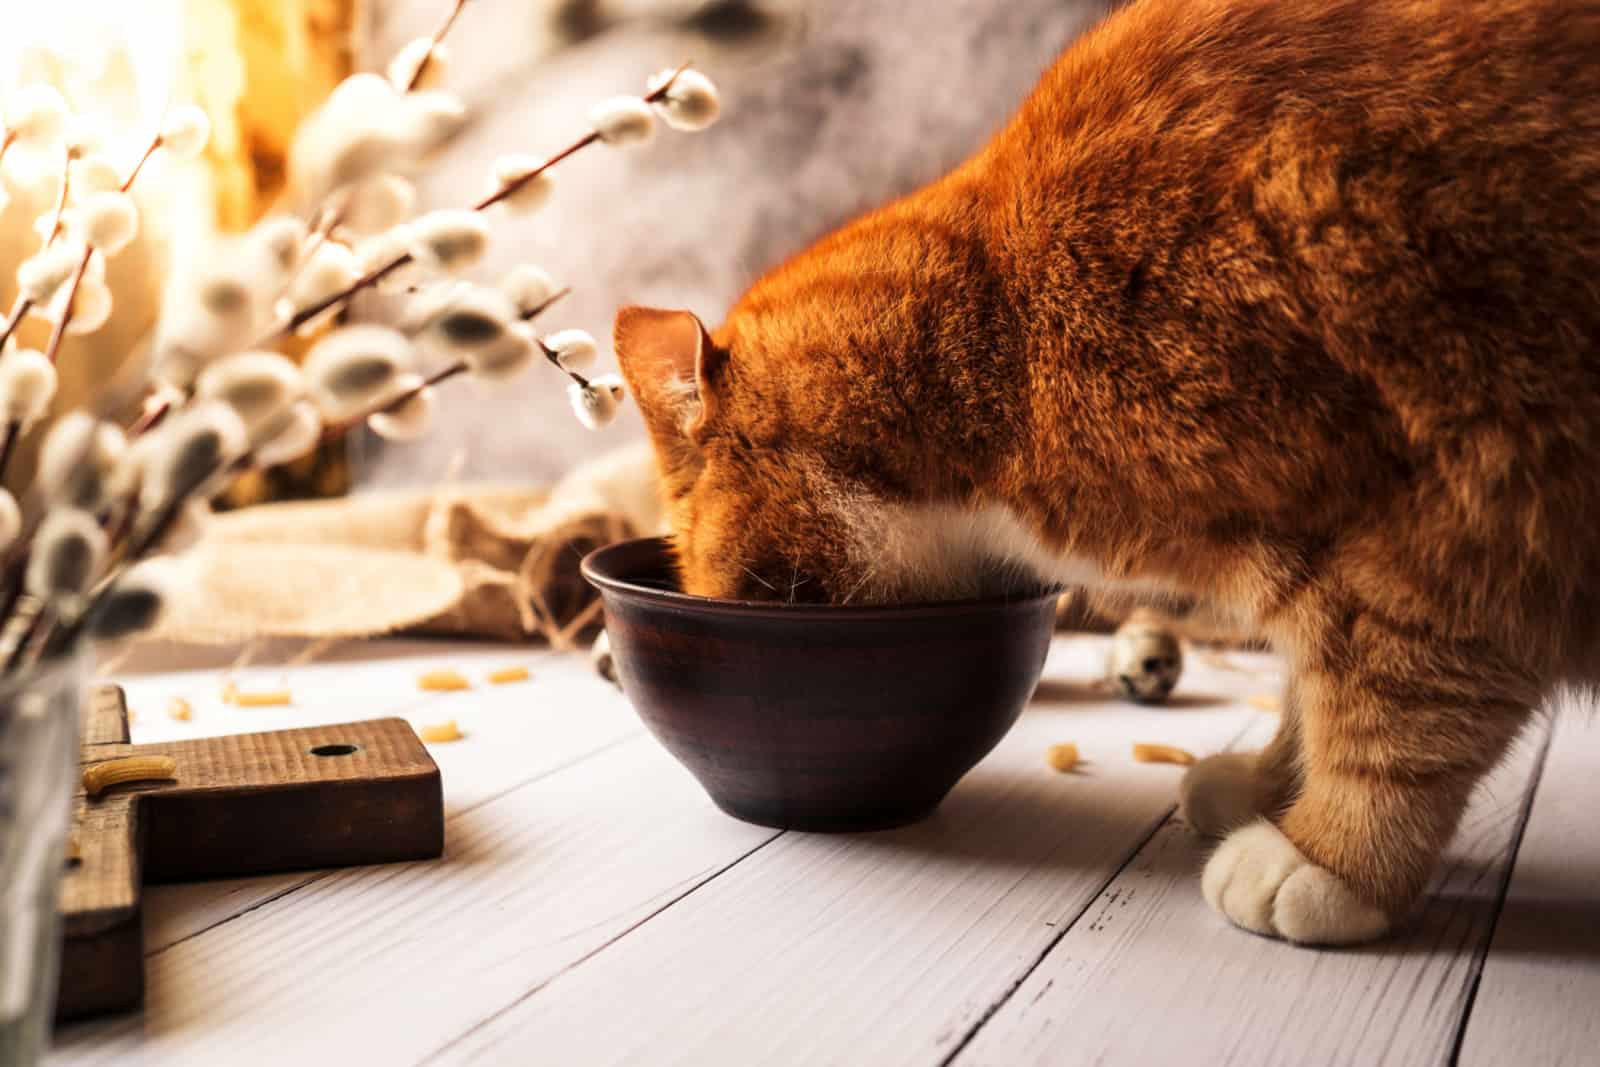 Rode kat eet heerlijk gezond voedsel uit een kom van klei op een witte houten tafel